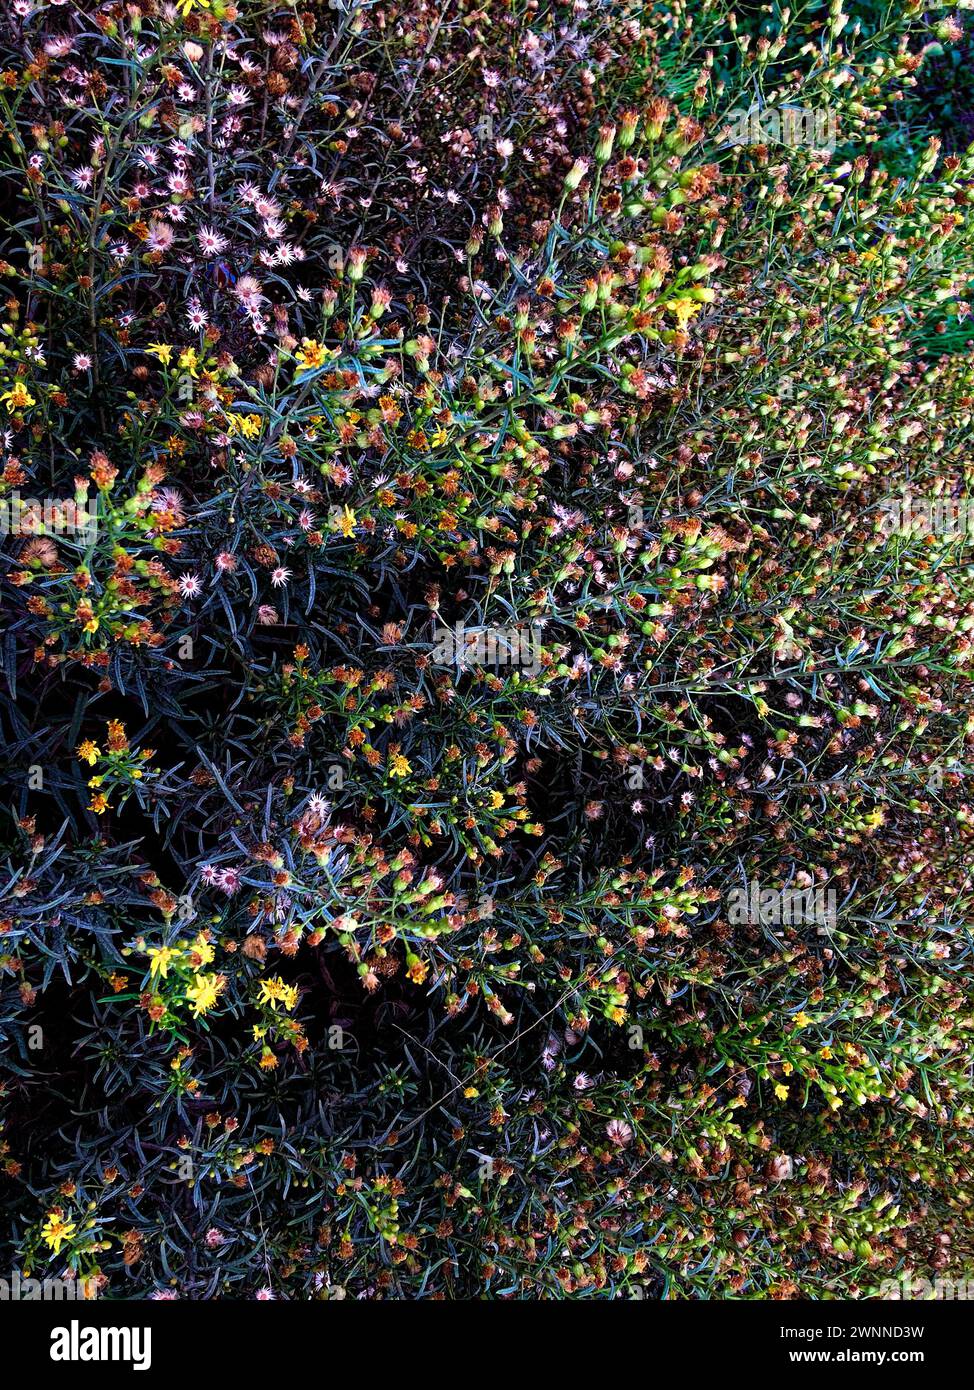 Una vista dall'alto di un mix di piante, che mostra un contrasto di foglie verde scuro e fiori luminosi. Foto Stock